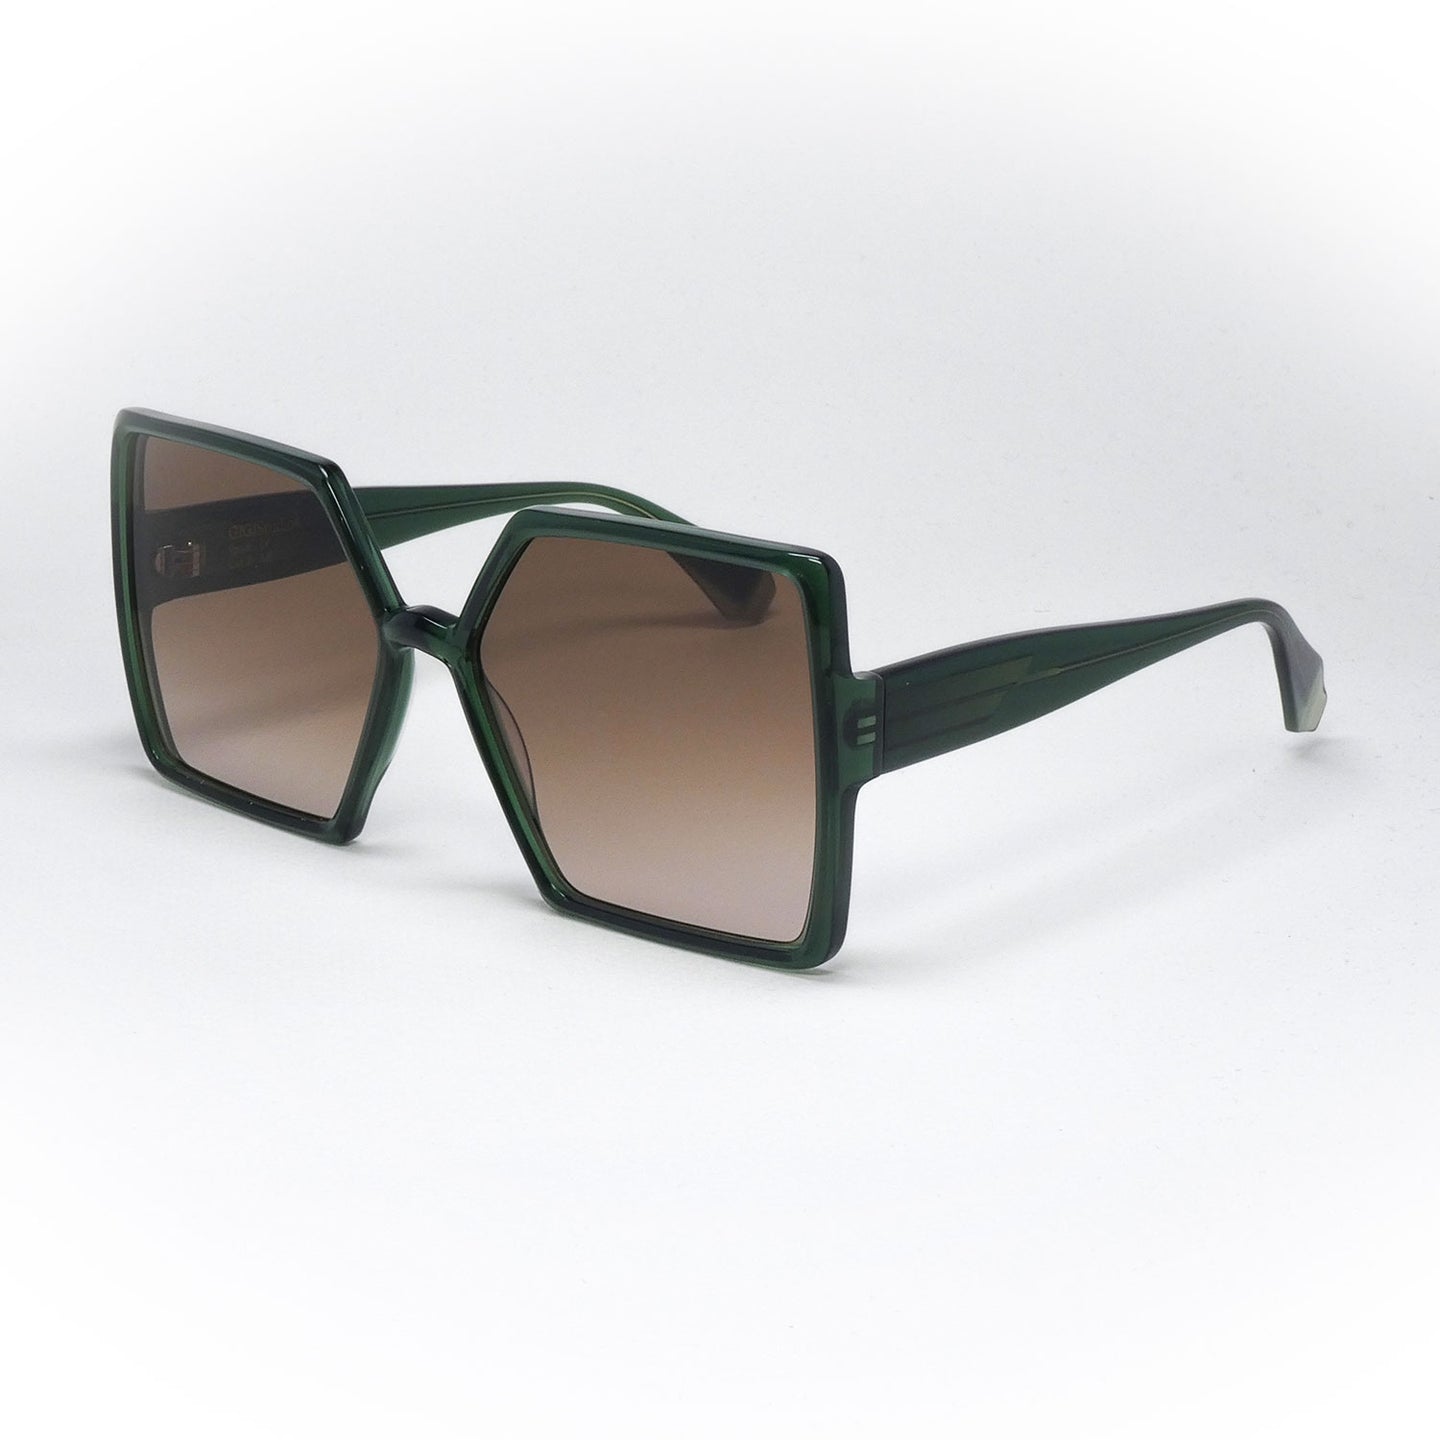 sunglasses gigistudios 6580 color 7 angled view